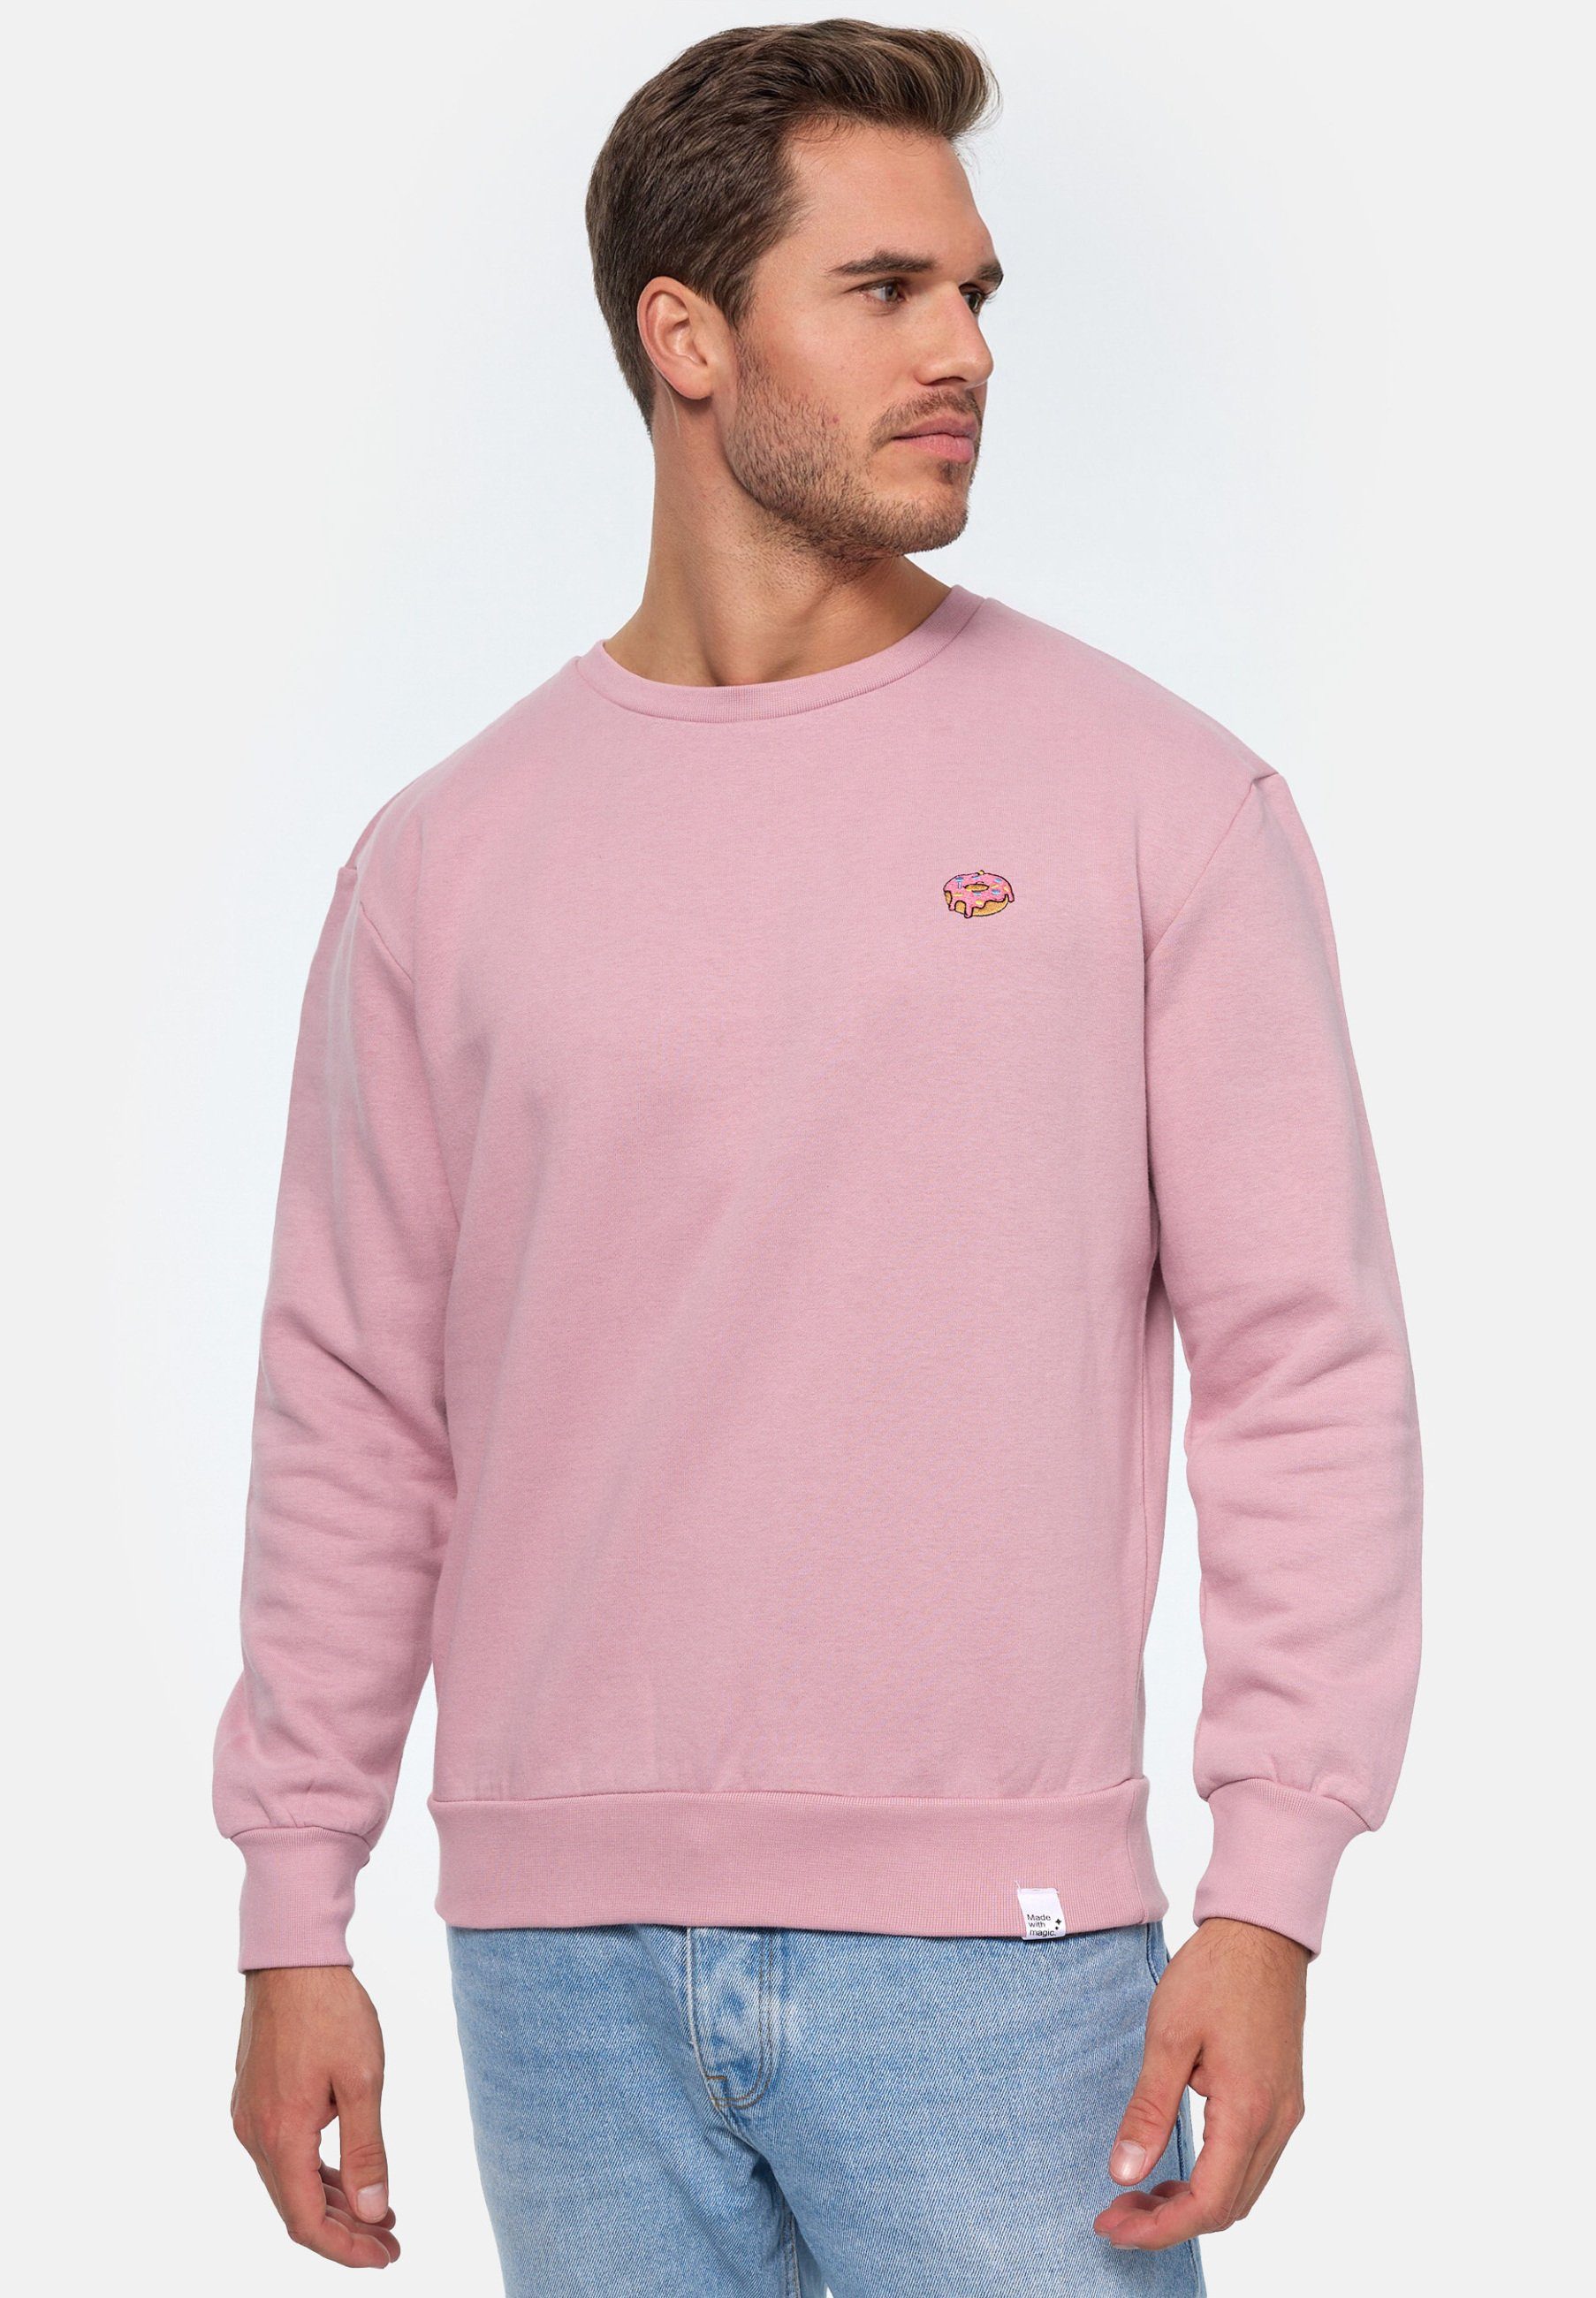 MIKON Sweatshirt Donut GOTS Pink zertifizierte Bio-Baumwolle